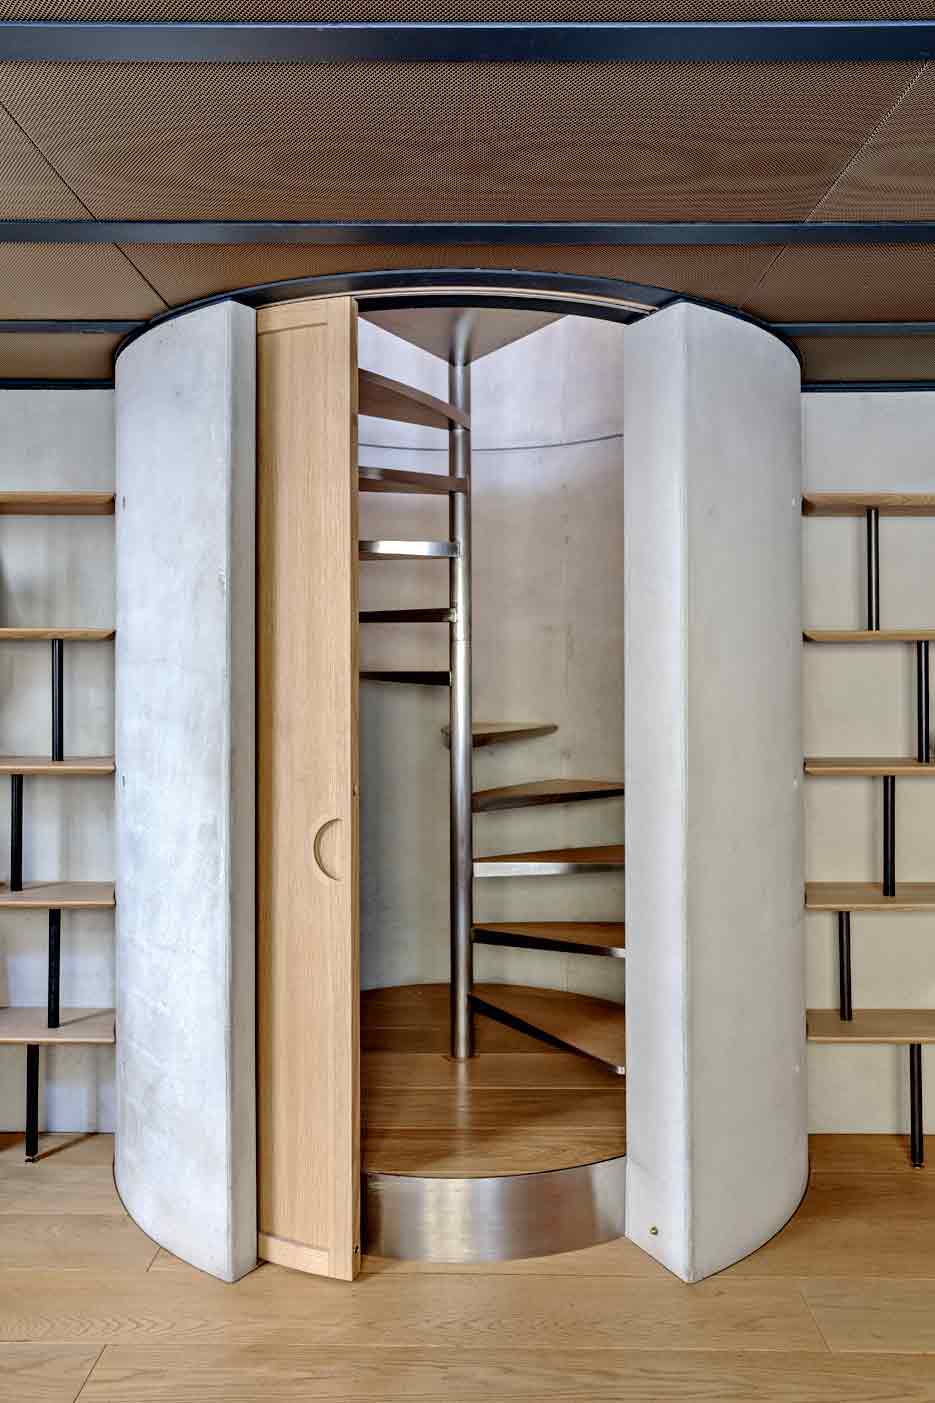 Лестница ведущая на второй уровень спрятана в бетонный “стакан” дверь дизайнер тоже сде­лал полукруглой.